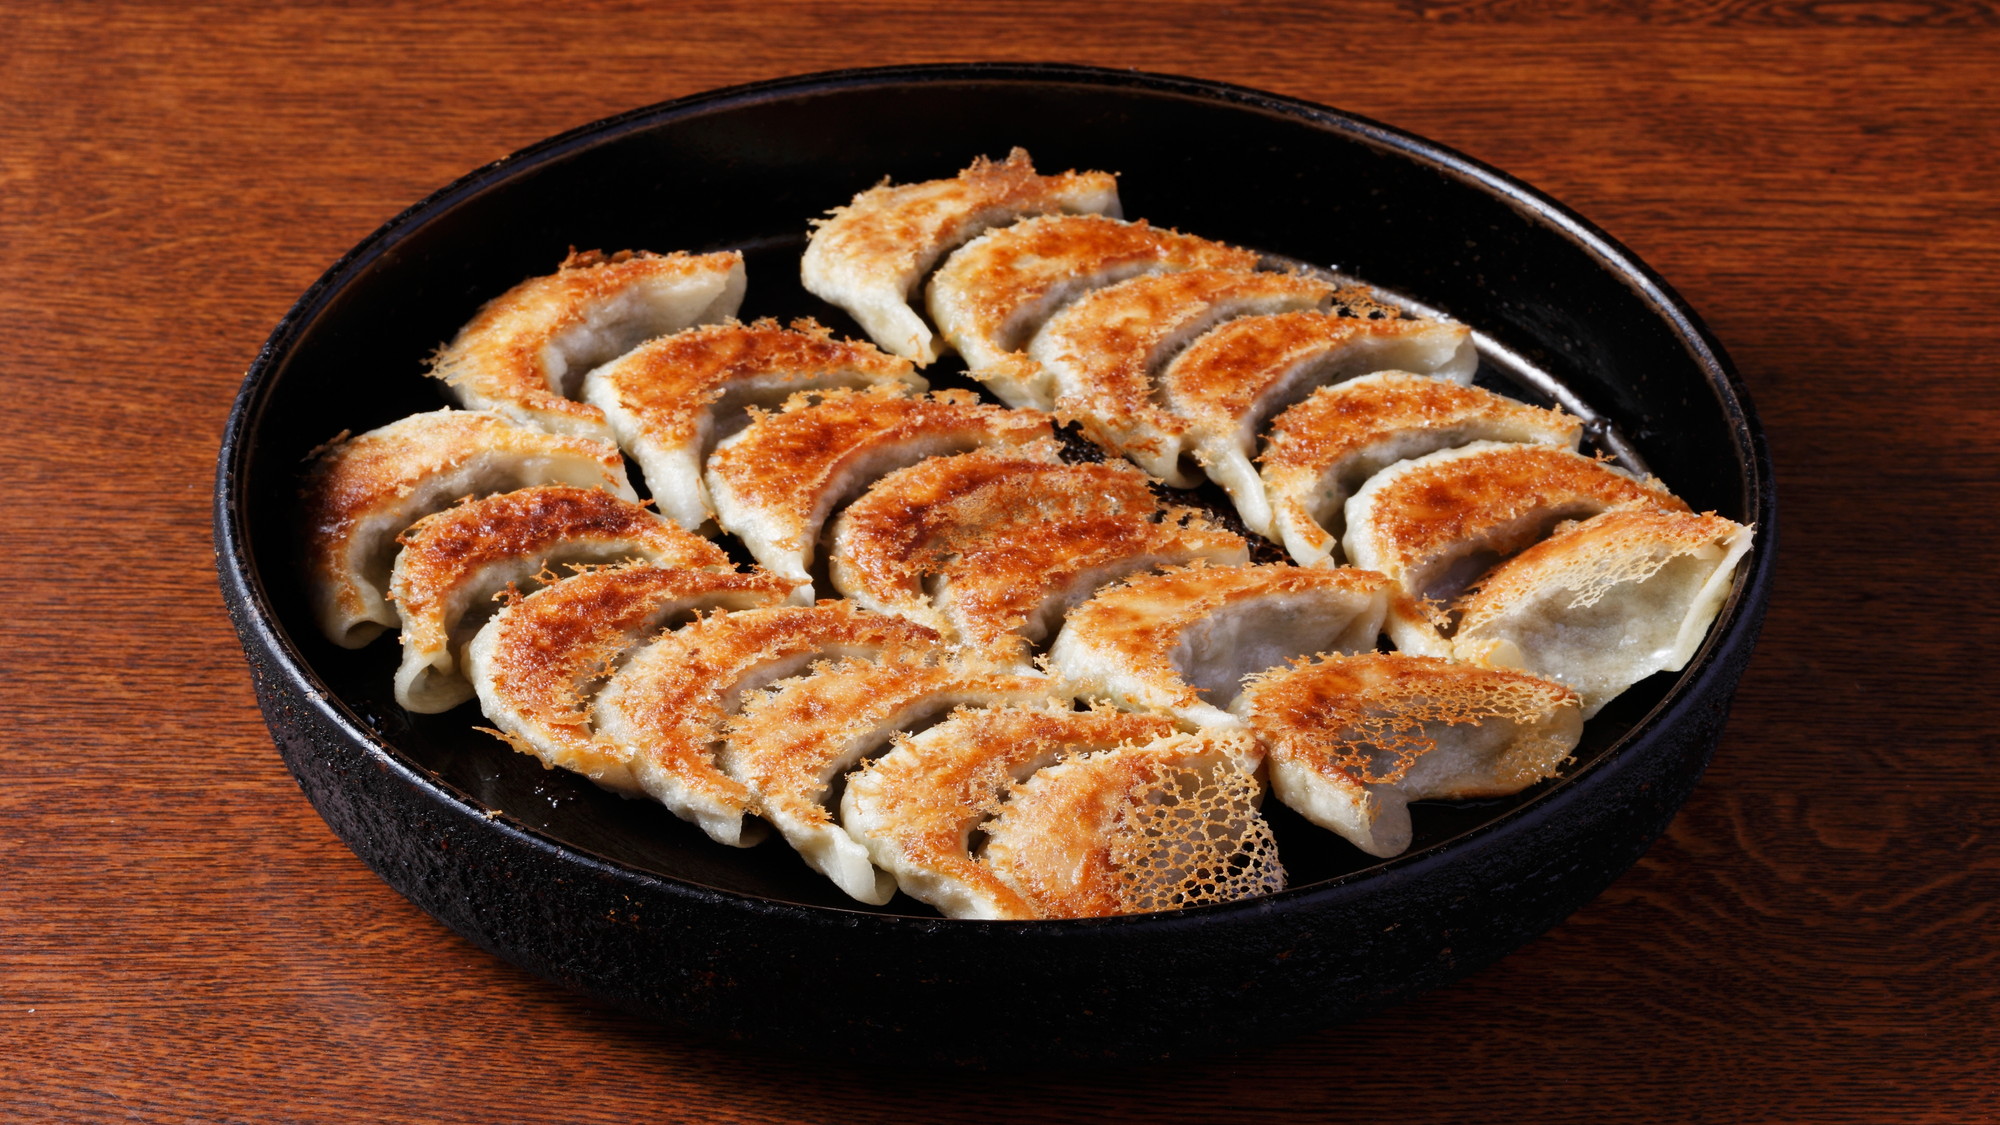 鉄板餃子 熱々の鉄板に乗せられた一口サイズの餃子。博多を代表するグルメの一つです。